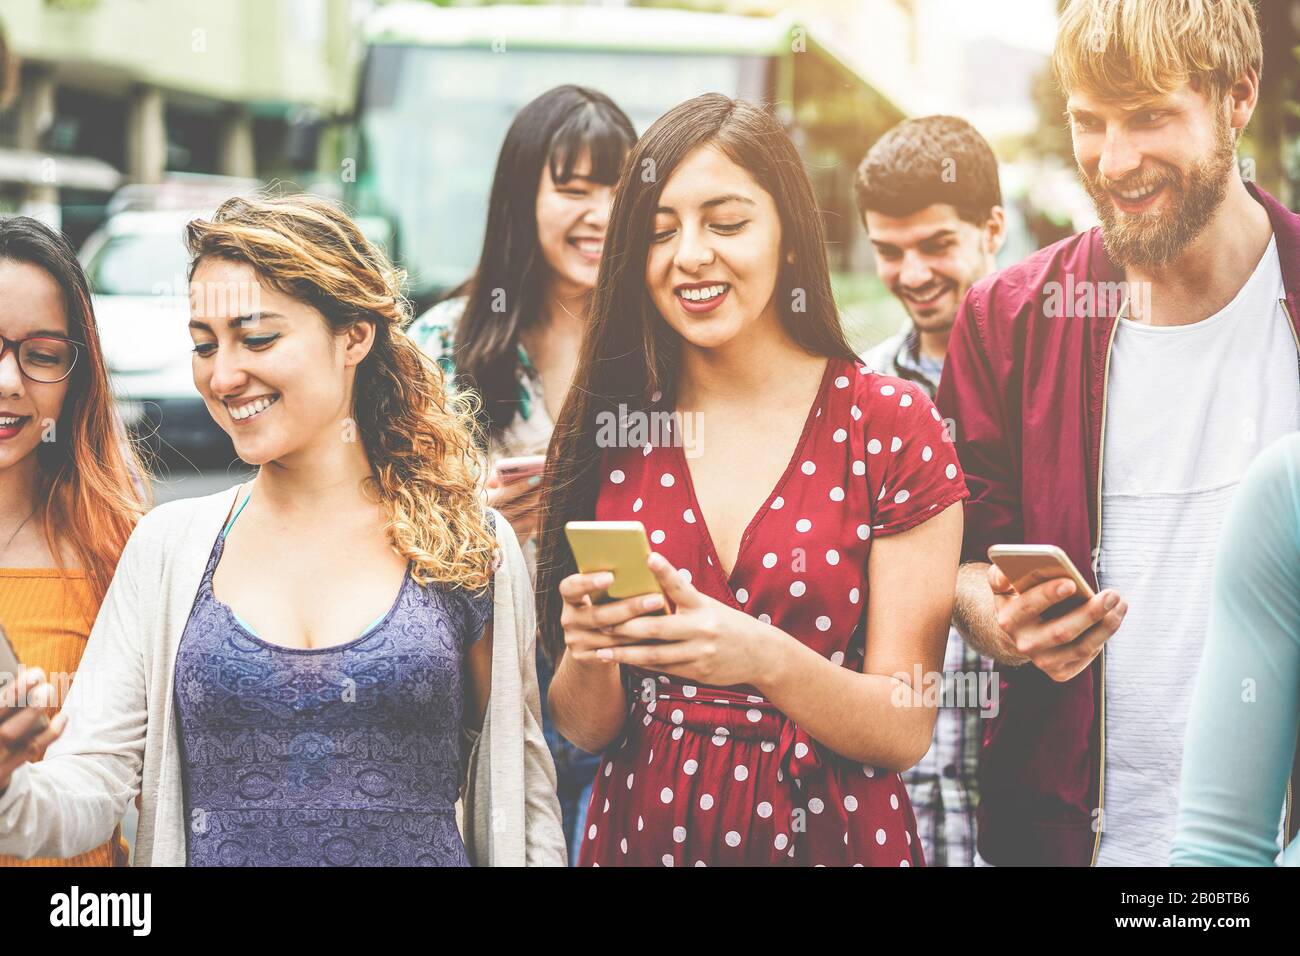 Fröhliche tausendjährige Freunde, die Smartphones am Busbahnhof nutzen - Junge Studenten, die nach der Schule im Freien Spaß haben - Freundschaft und Stadtlif Stockfoto